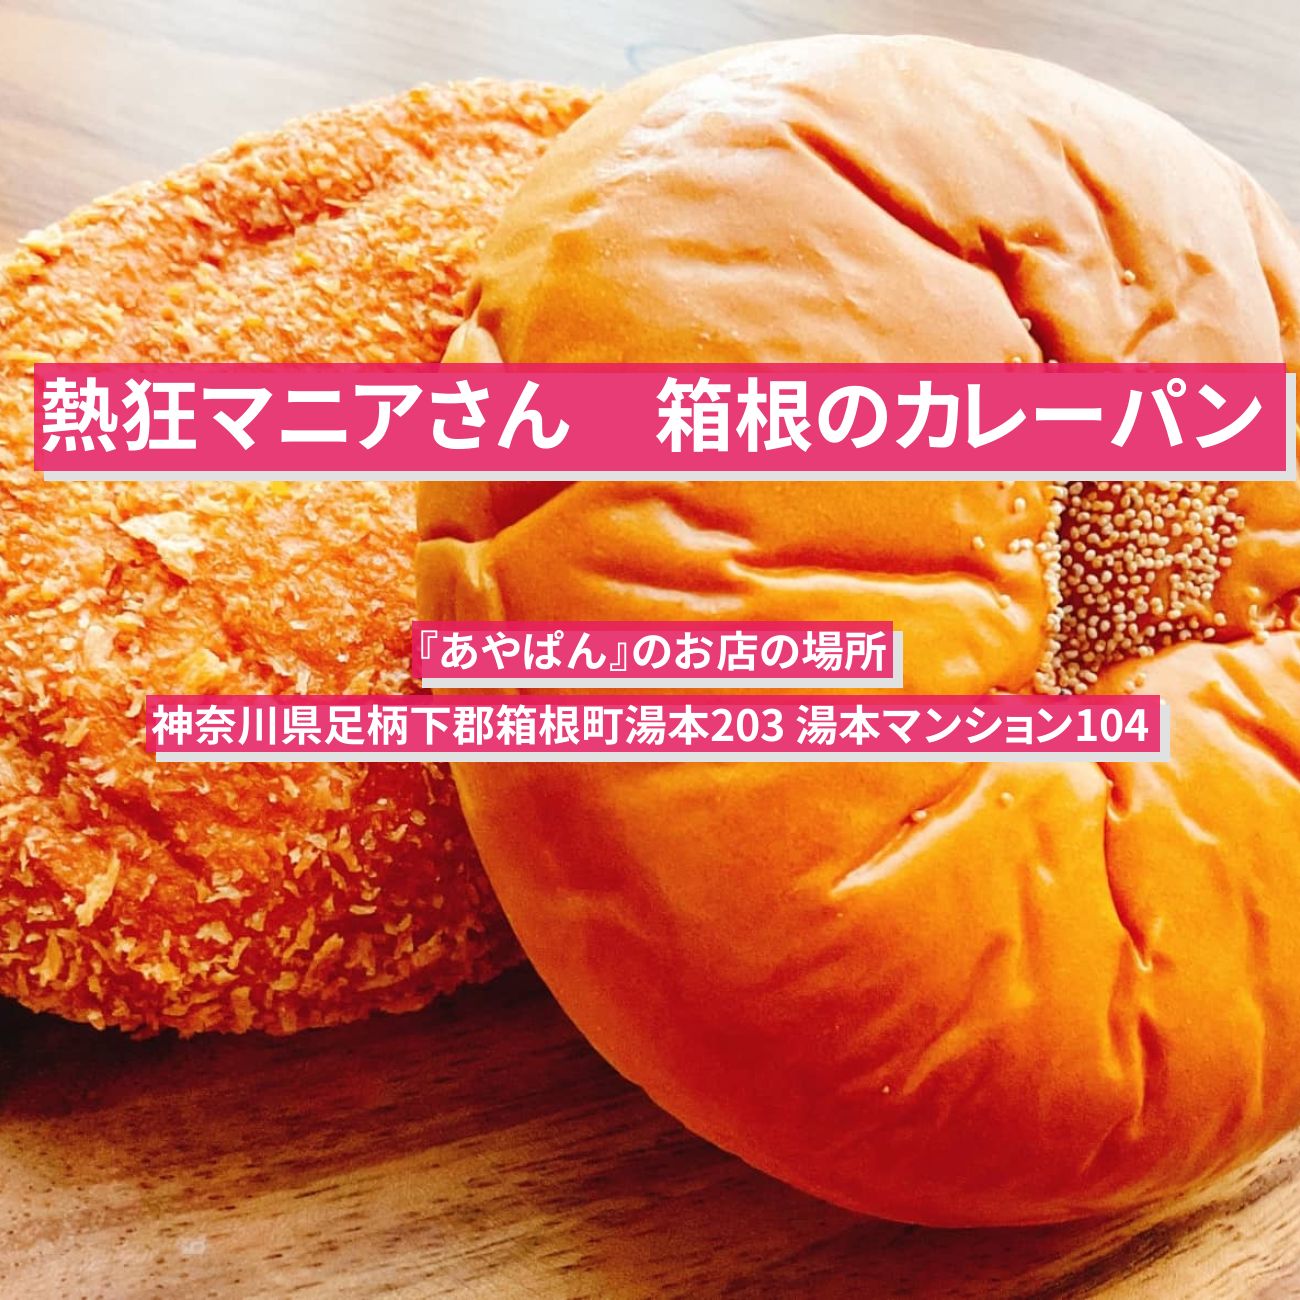 【熱狂マニアさん】箱根のカレーパン『あやぱん』のお店の場所